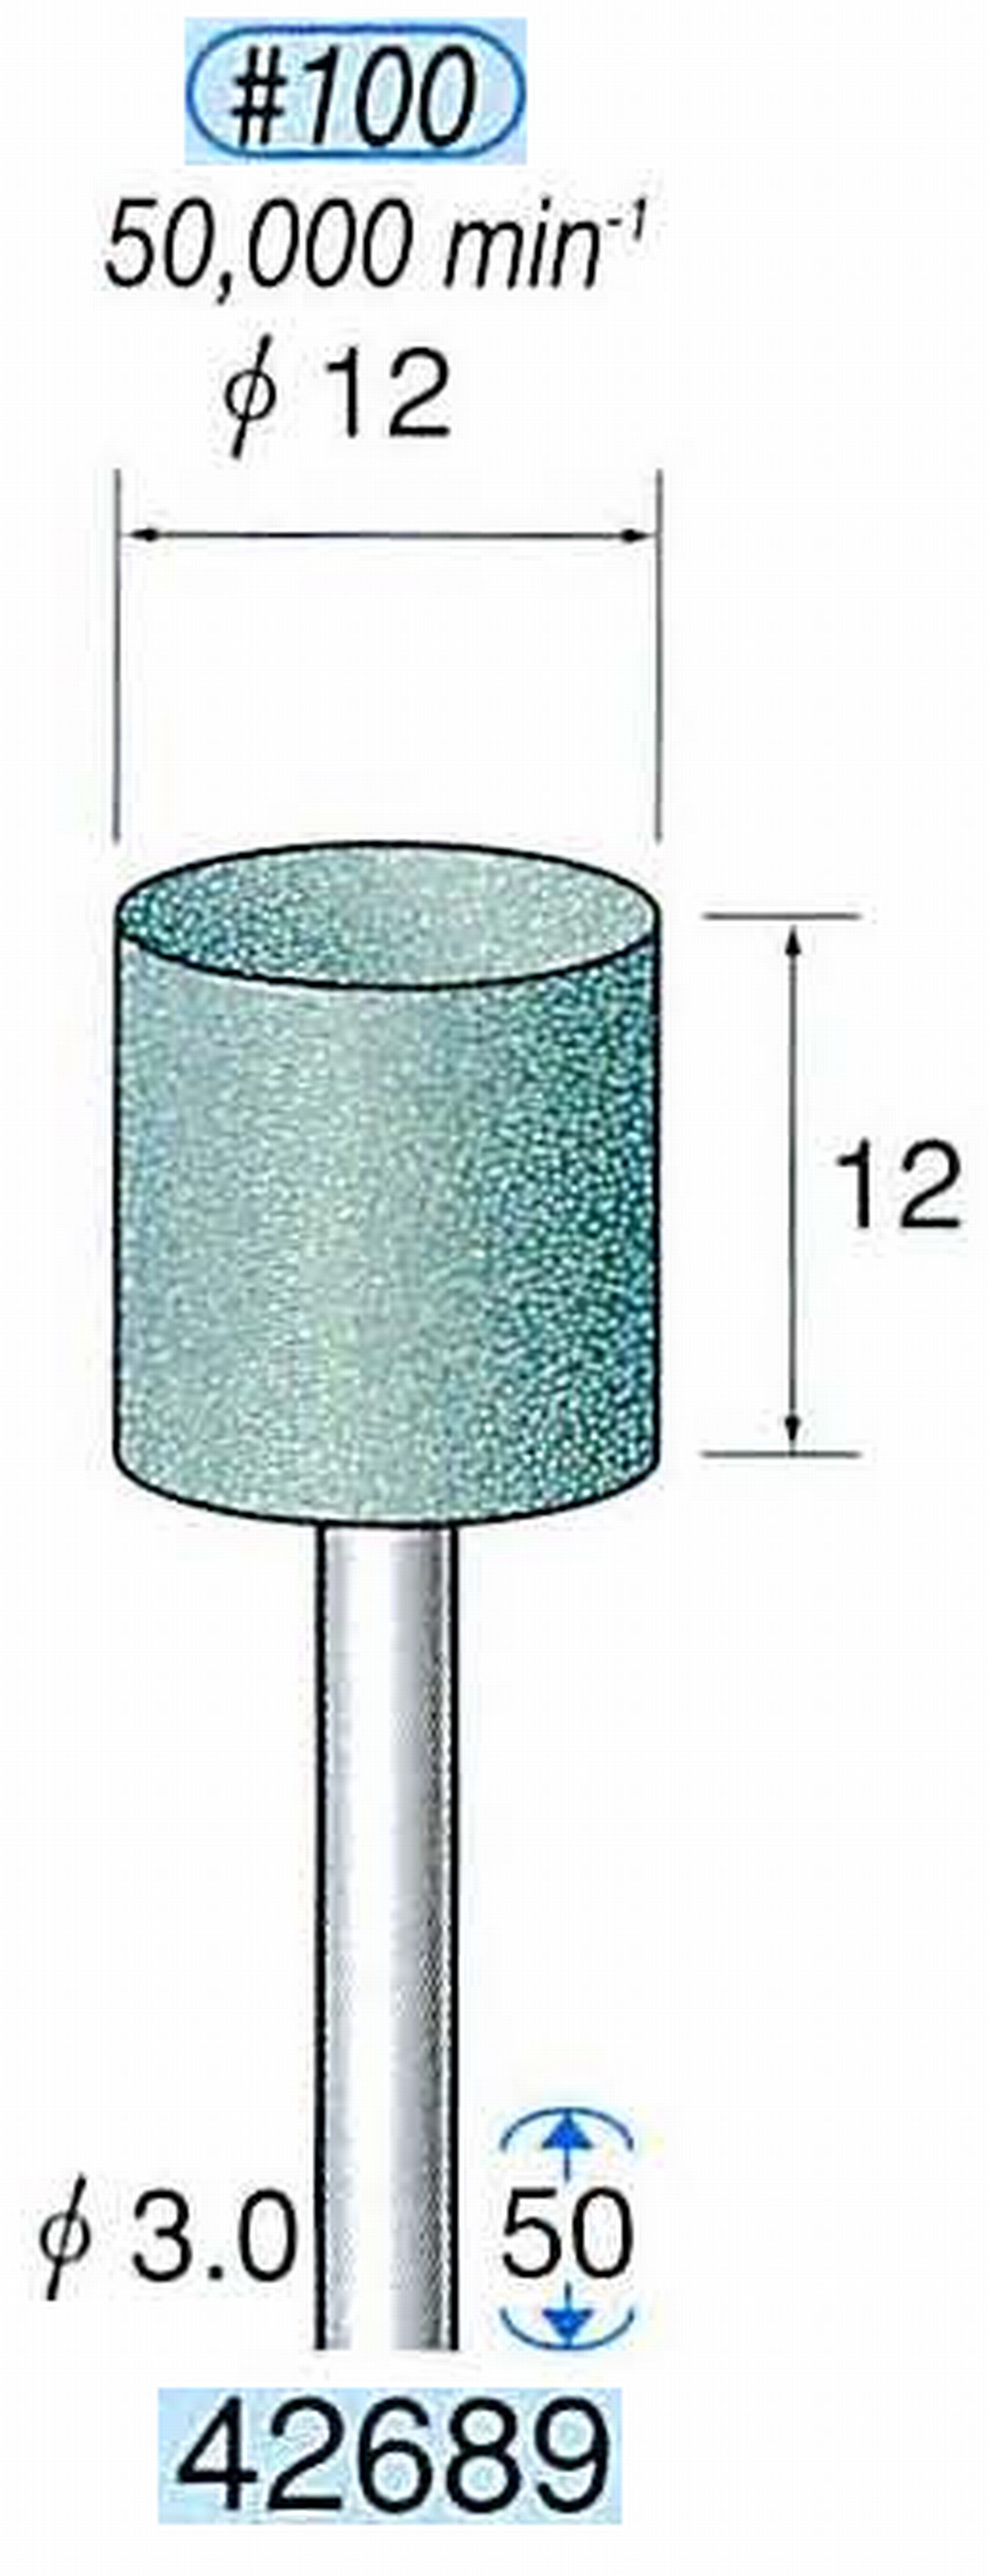 ナカニシ/NAKANISHI 軸付砥石(GC砥粒) グリーン砥石 軸径(シャンク) φ3.0mm 42689